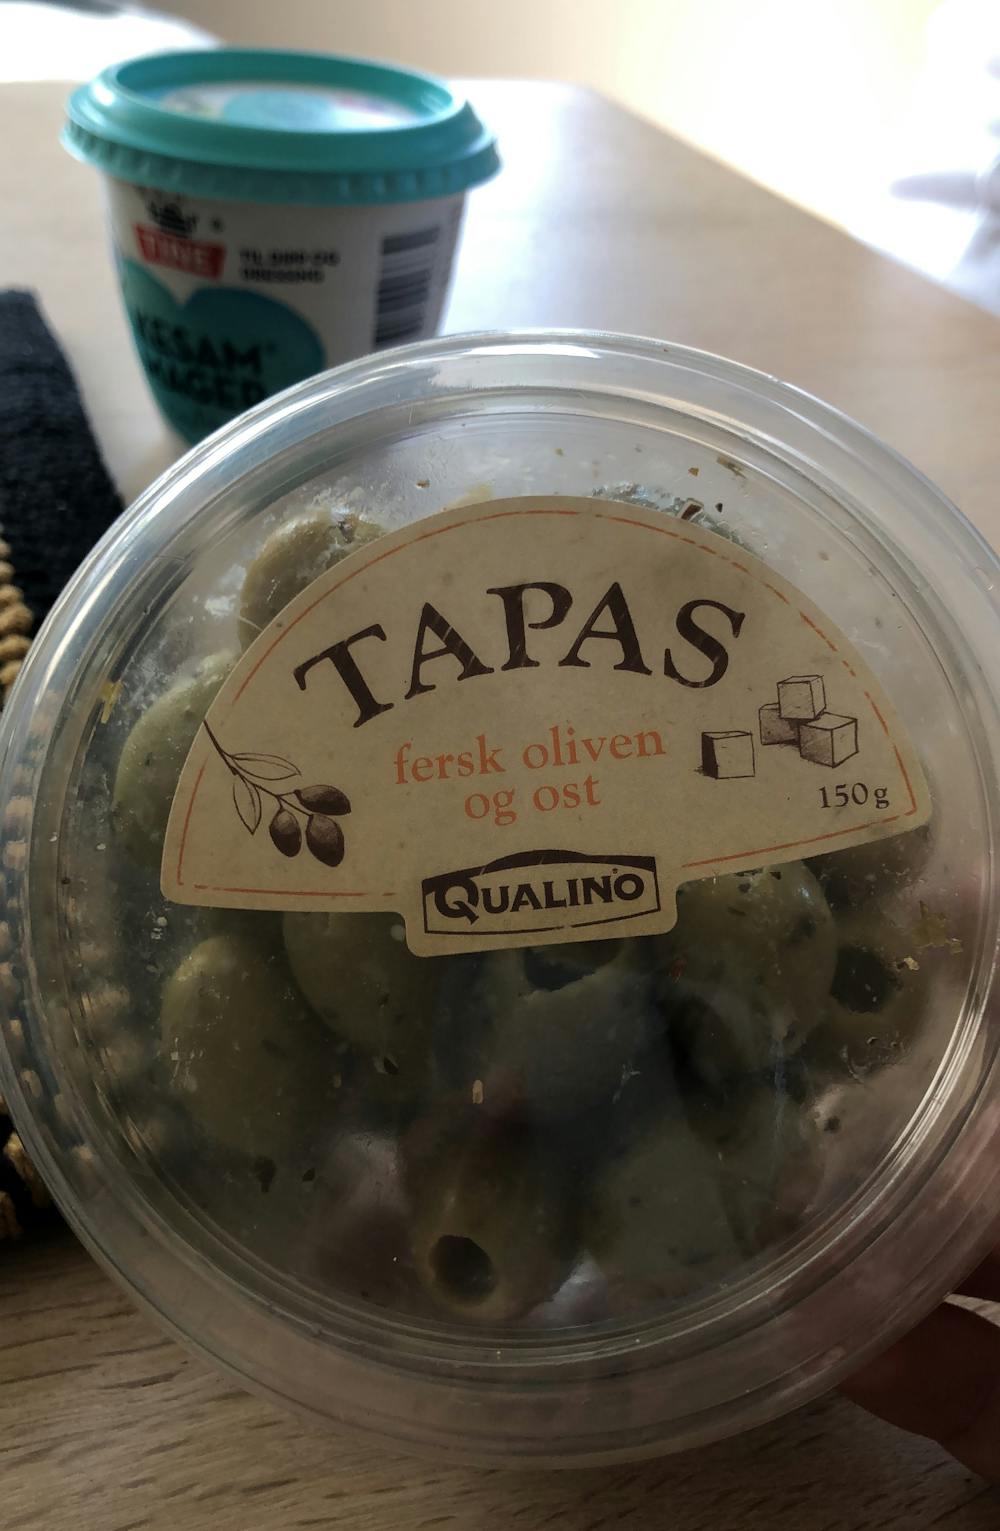 Tapas, fersk oliven og ost, Qualind